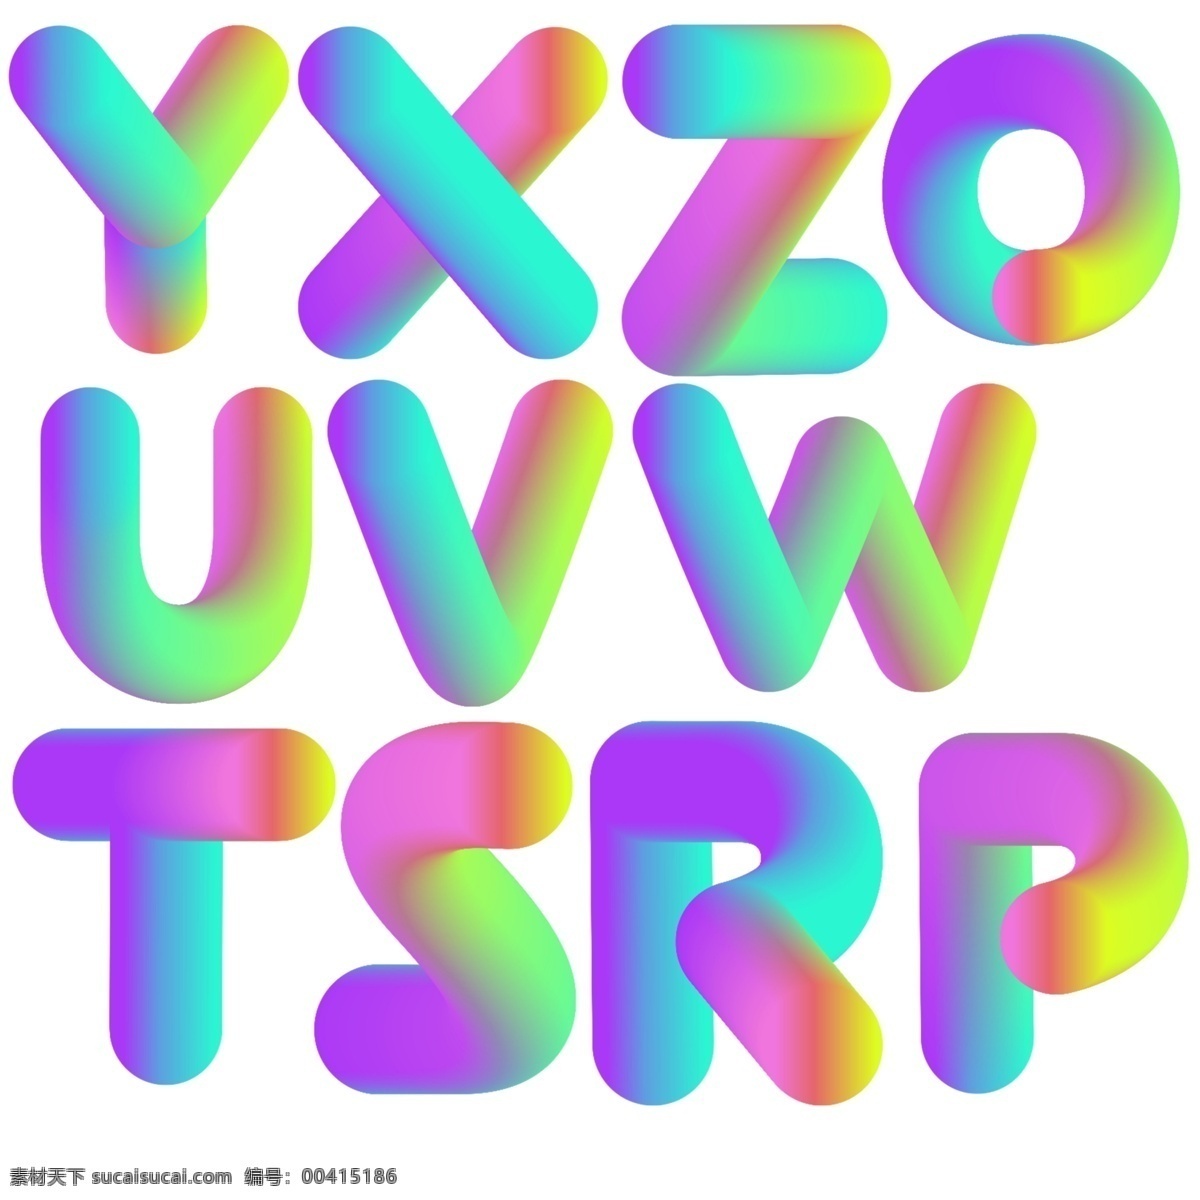 渐变 立体 效果 英文 字母 彩虹色 创意 立体效果 立体字母 艺术字母 英文字母